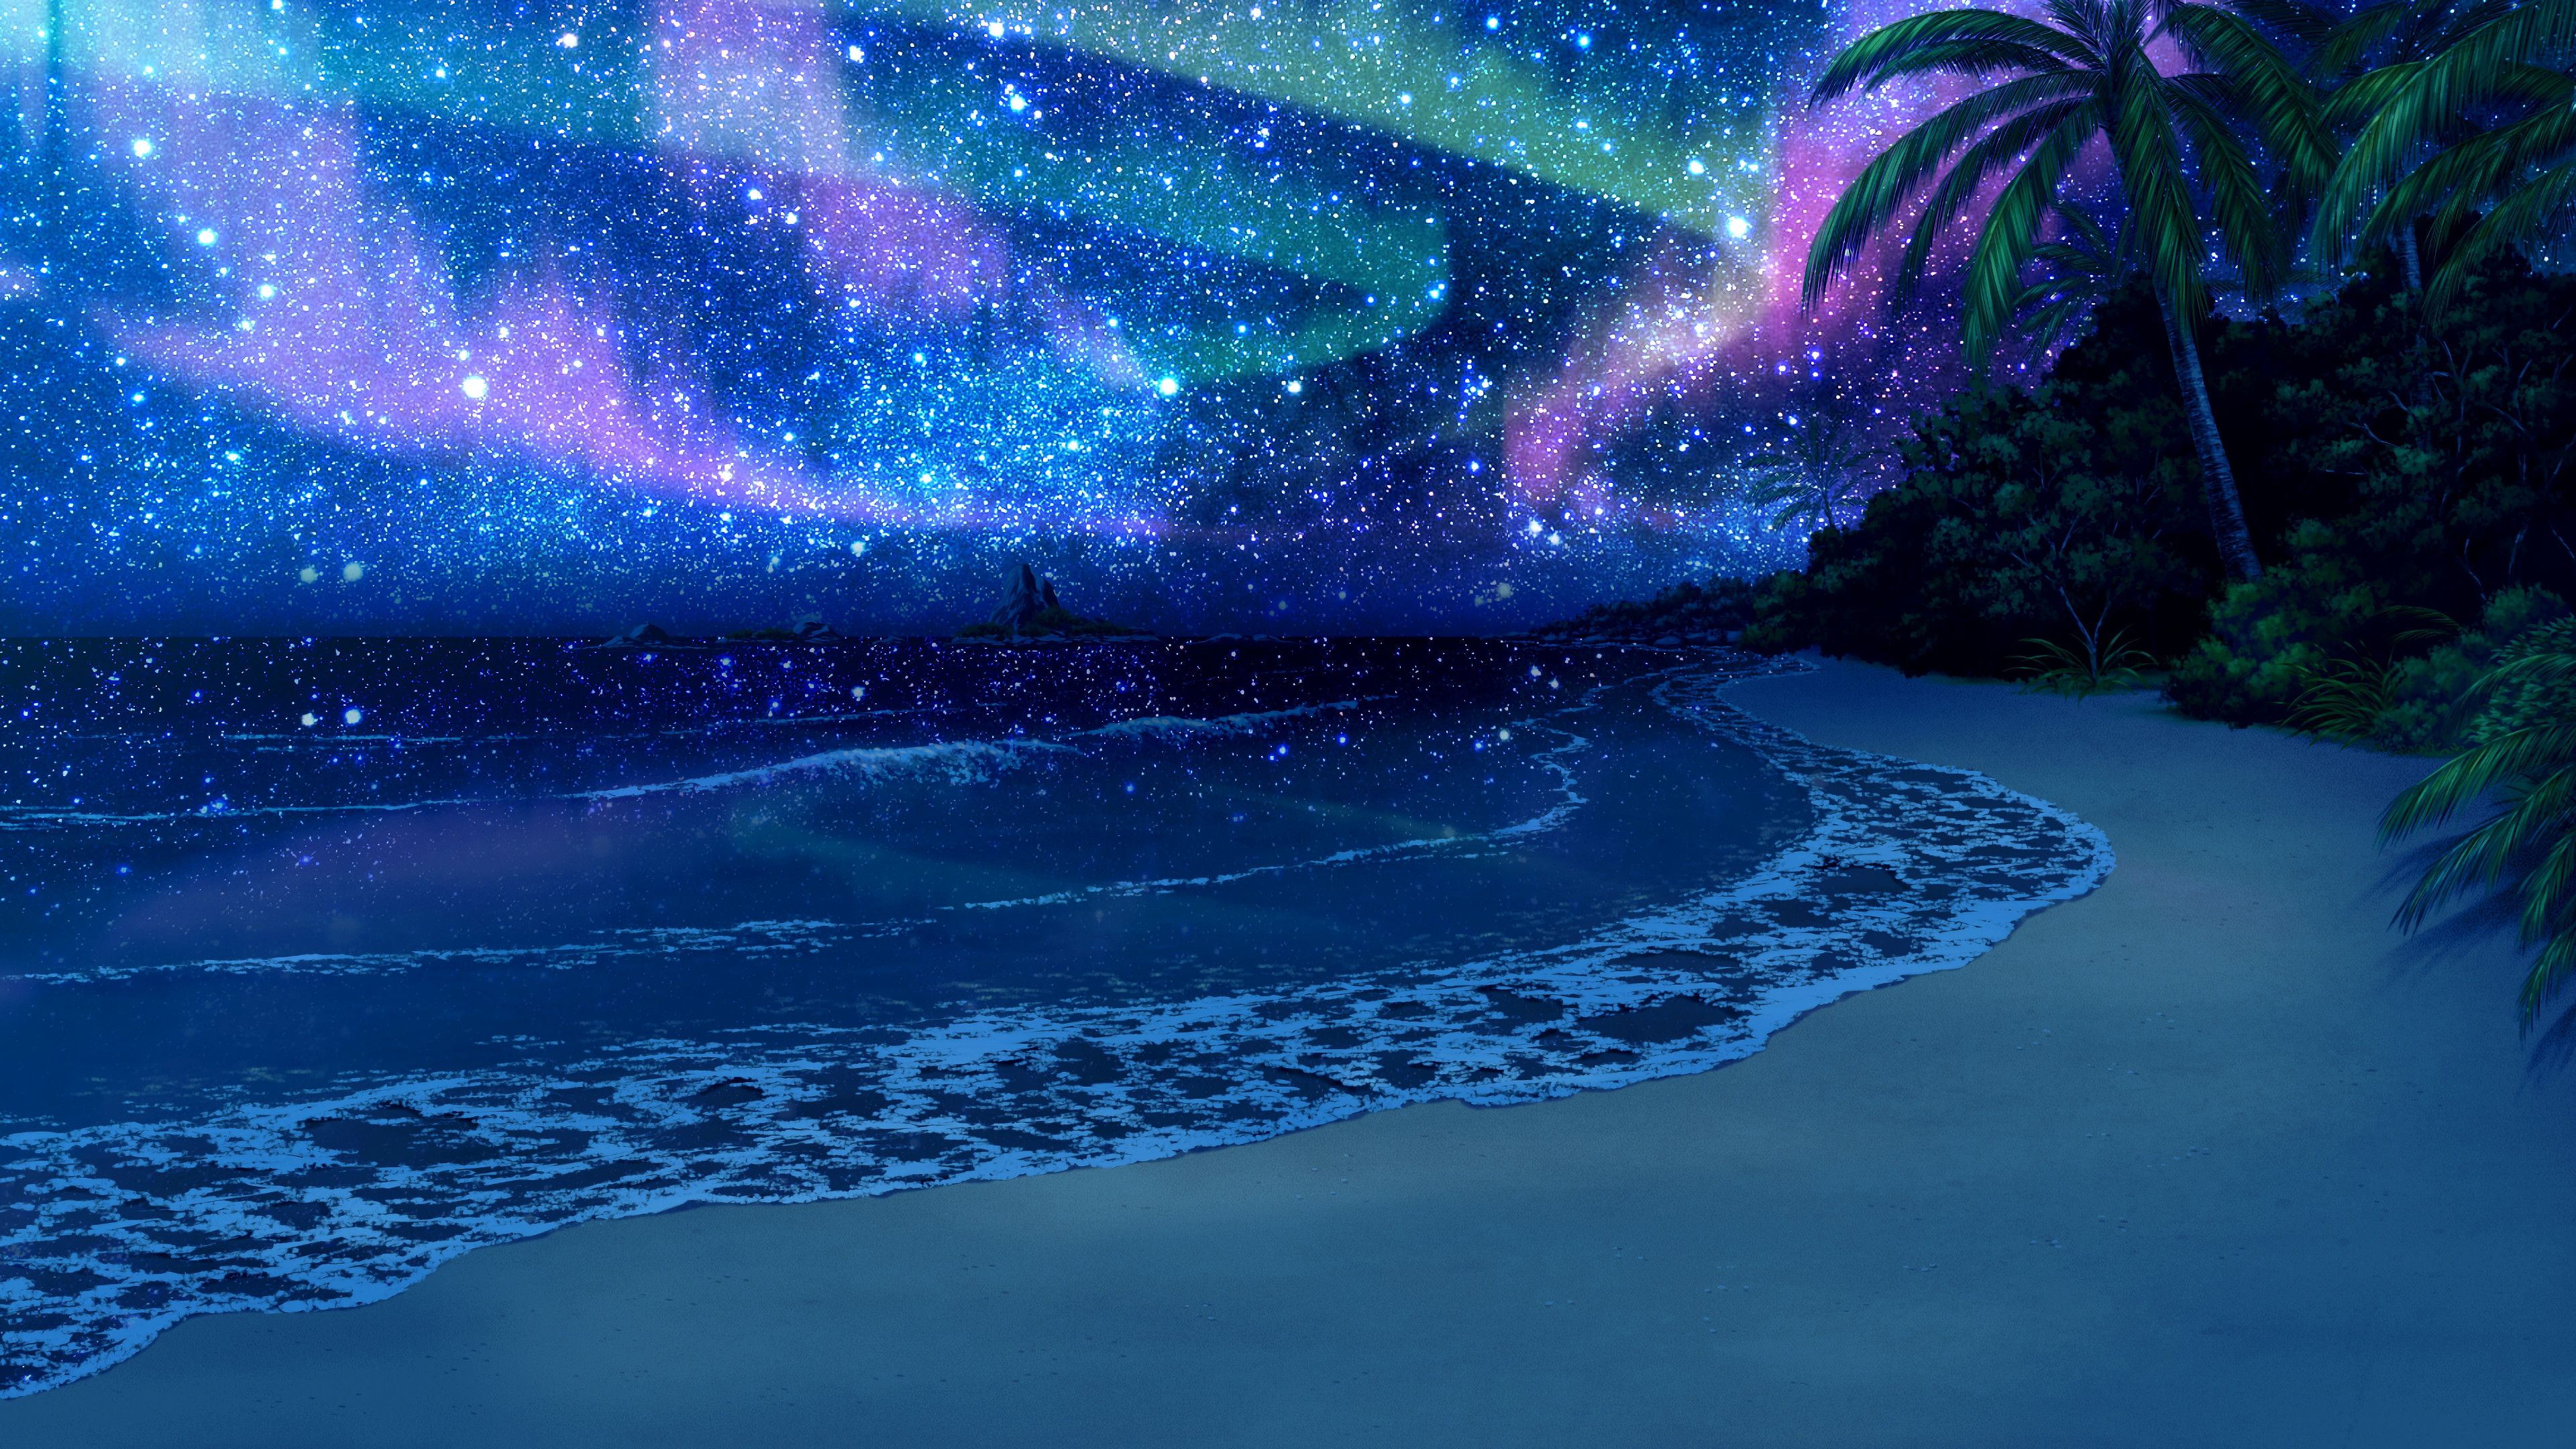 Beach Night Sky Stars Scenery Nature Anime 4K Wallpaper